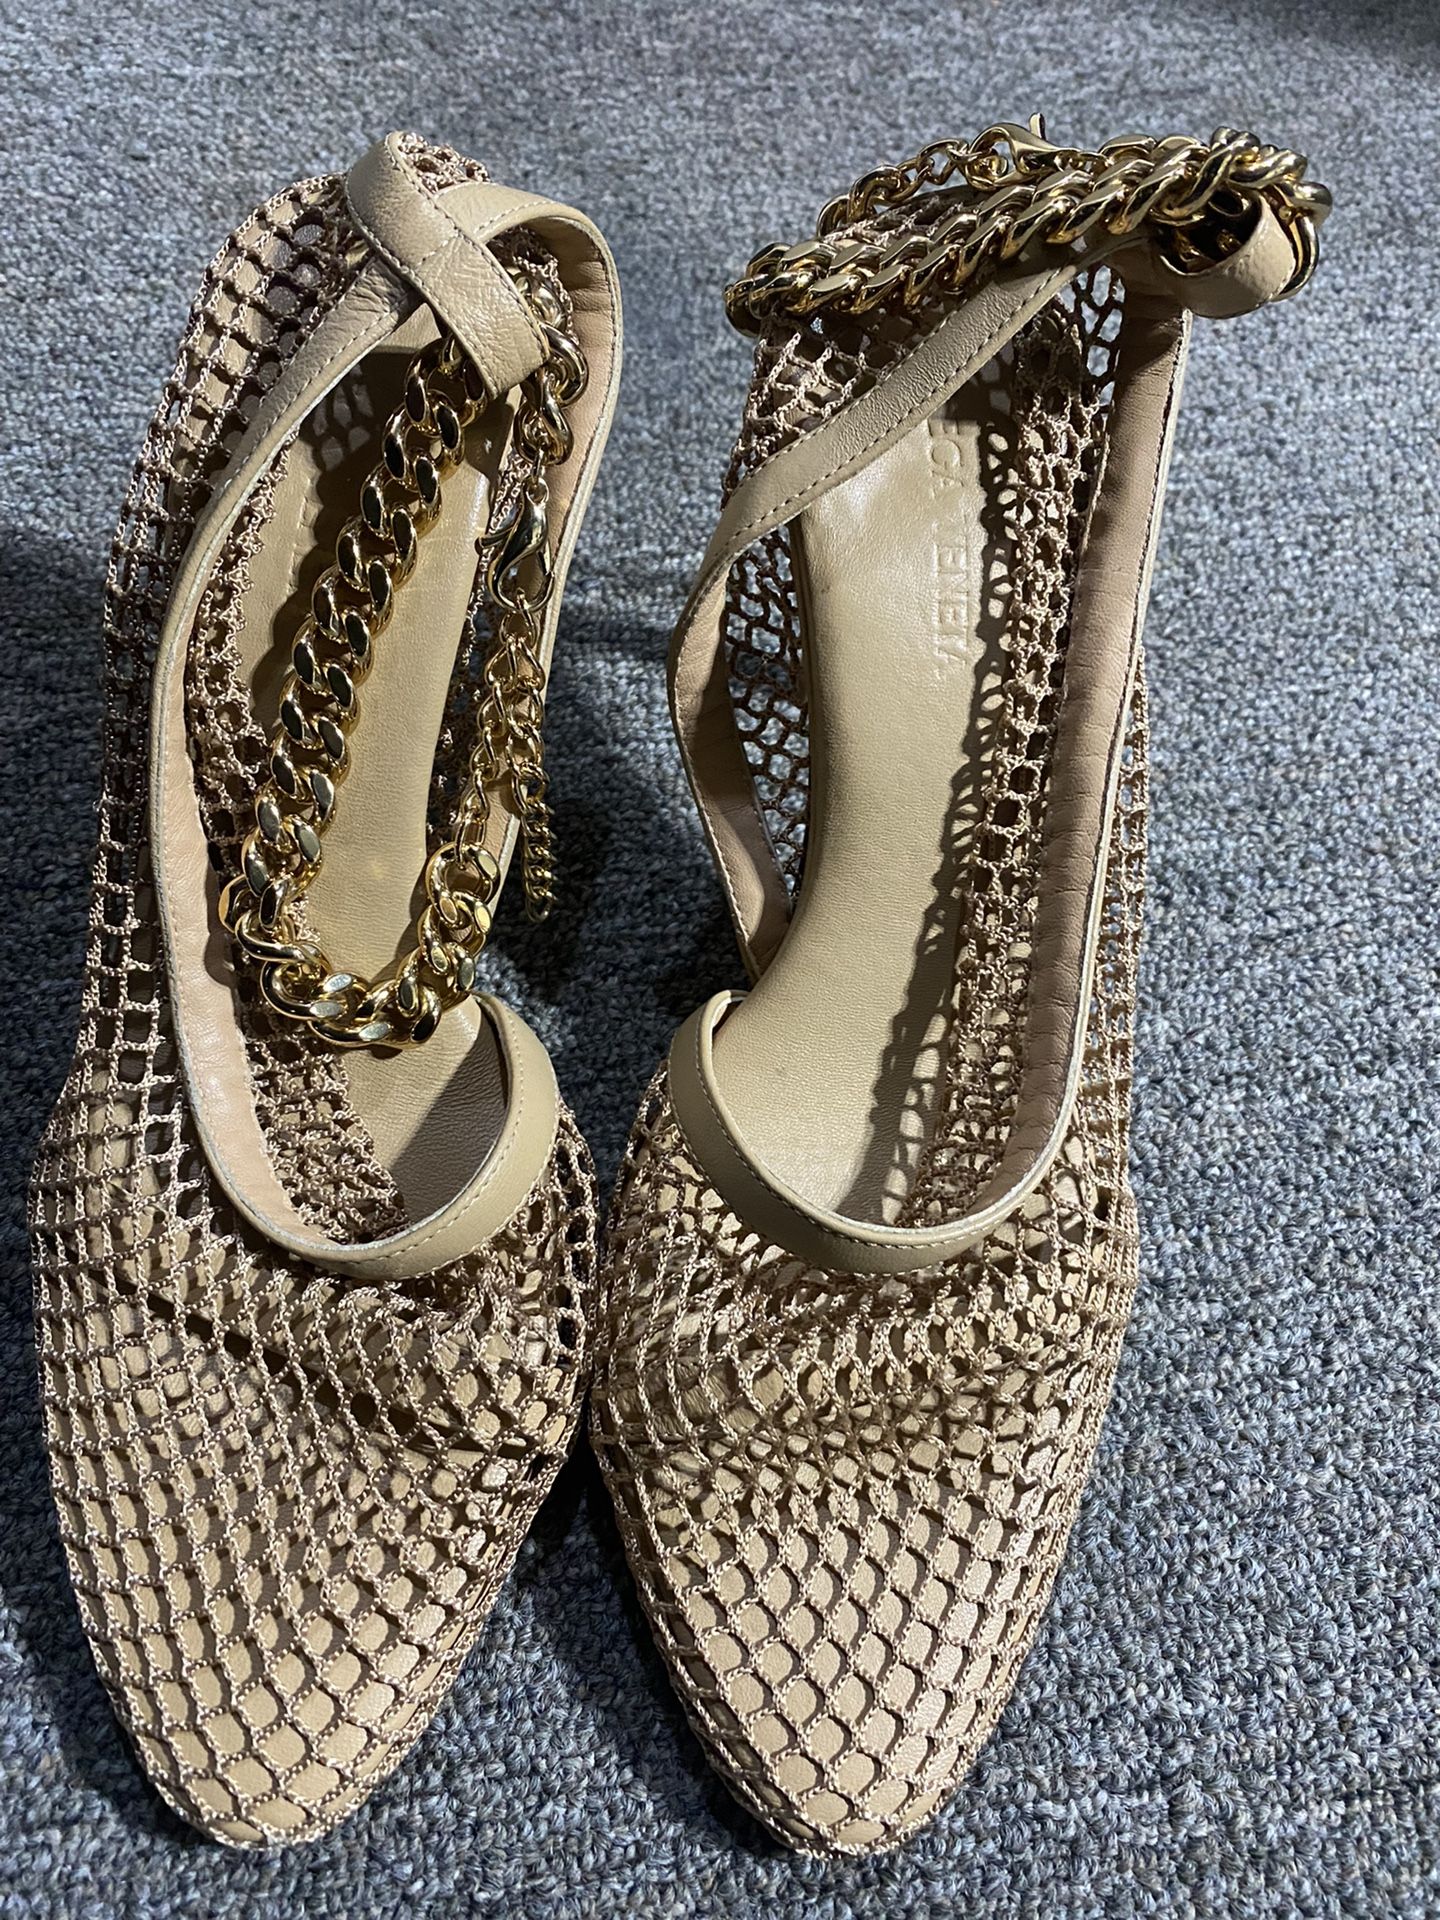 Authentic Bottega Veneta Sandals